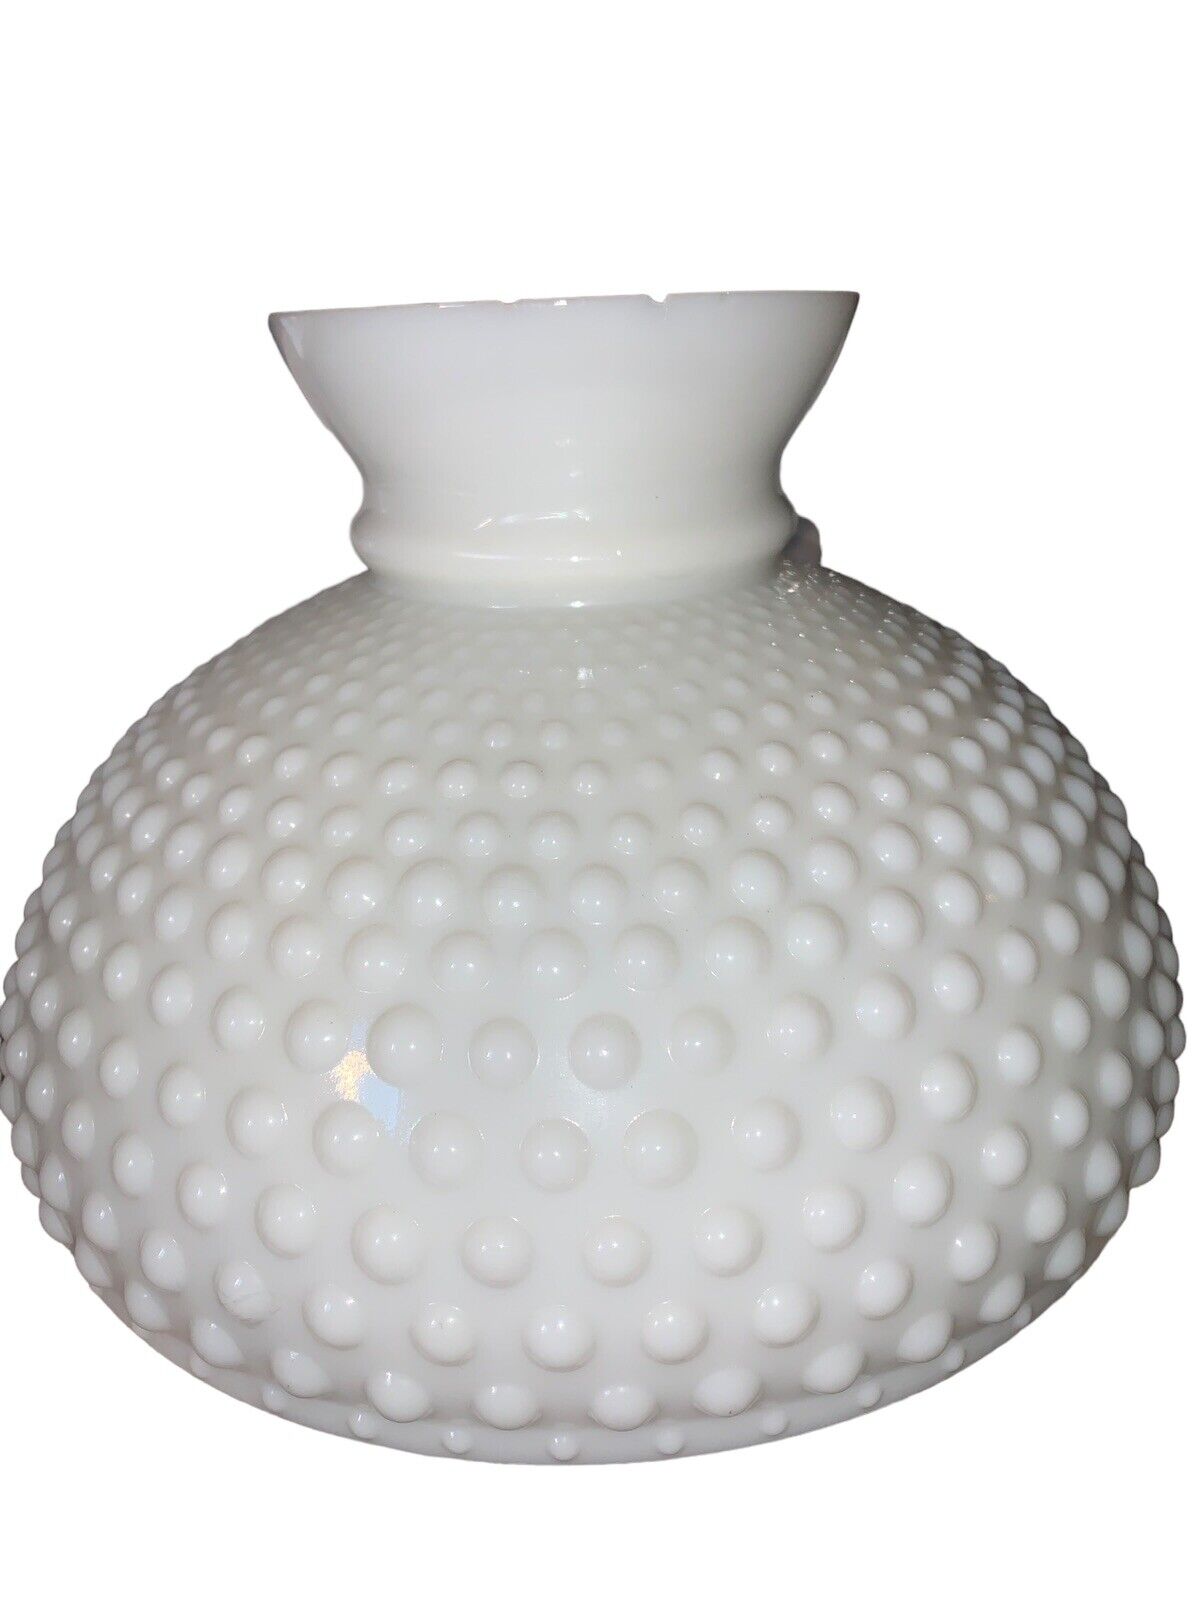 Vintage White Milk Glass Hobnail Hurricane Lamp Shade 7.5” Tall 9 7/8” Fitter